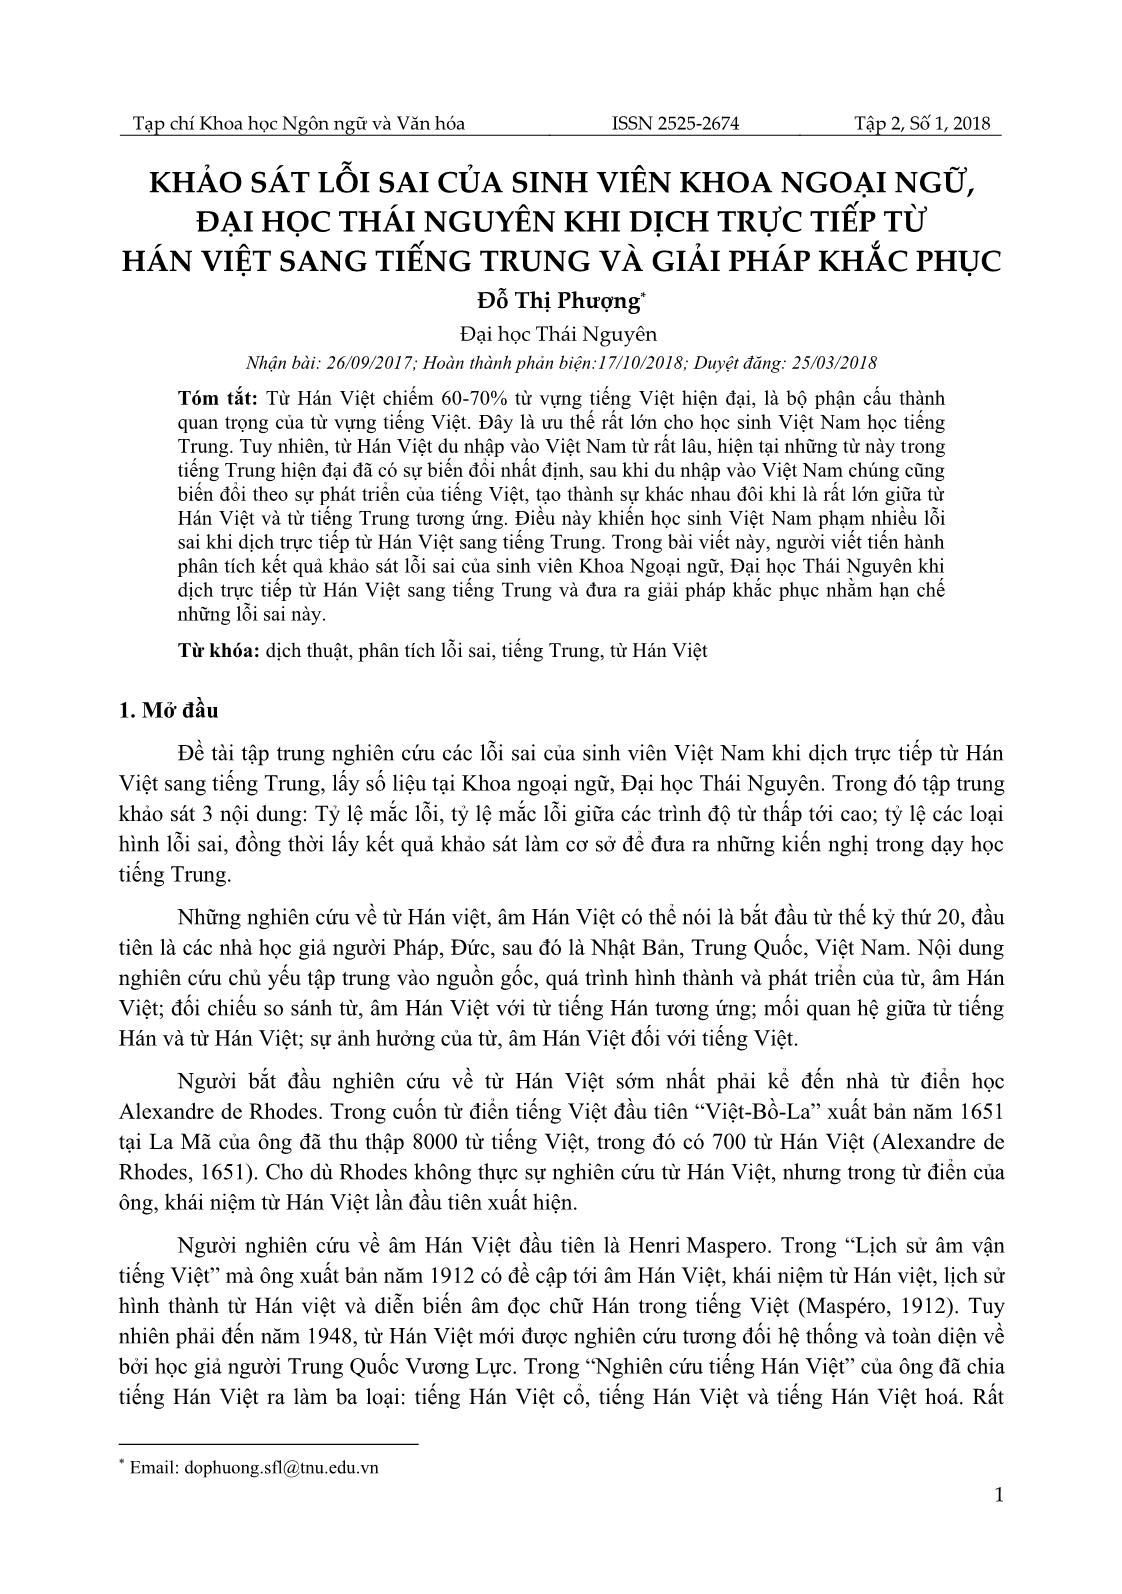 Khảo sát lỗi sai của sinh viên khoa Ngoại ngữ, Đại học Thái Nguyên khi dịch trực tiếp từ Hán Việt sang tiếng Trung và giải pháp khắc phục trang 1